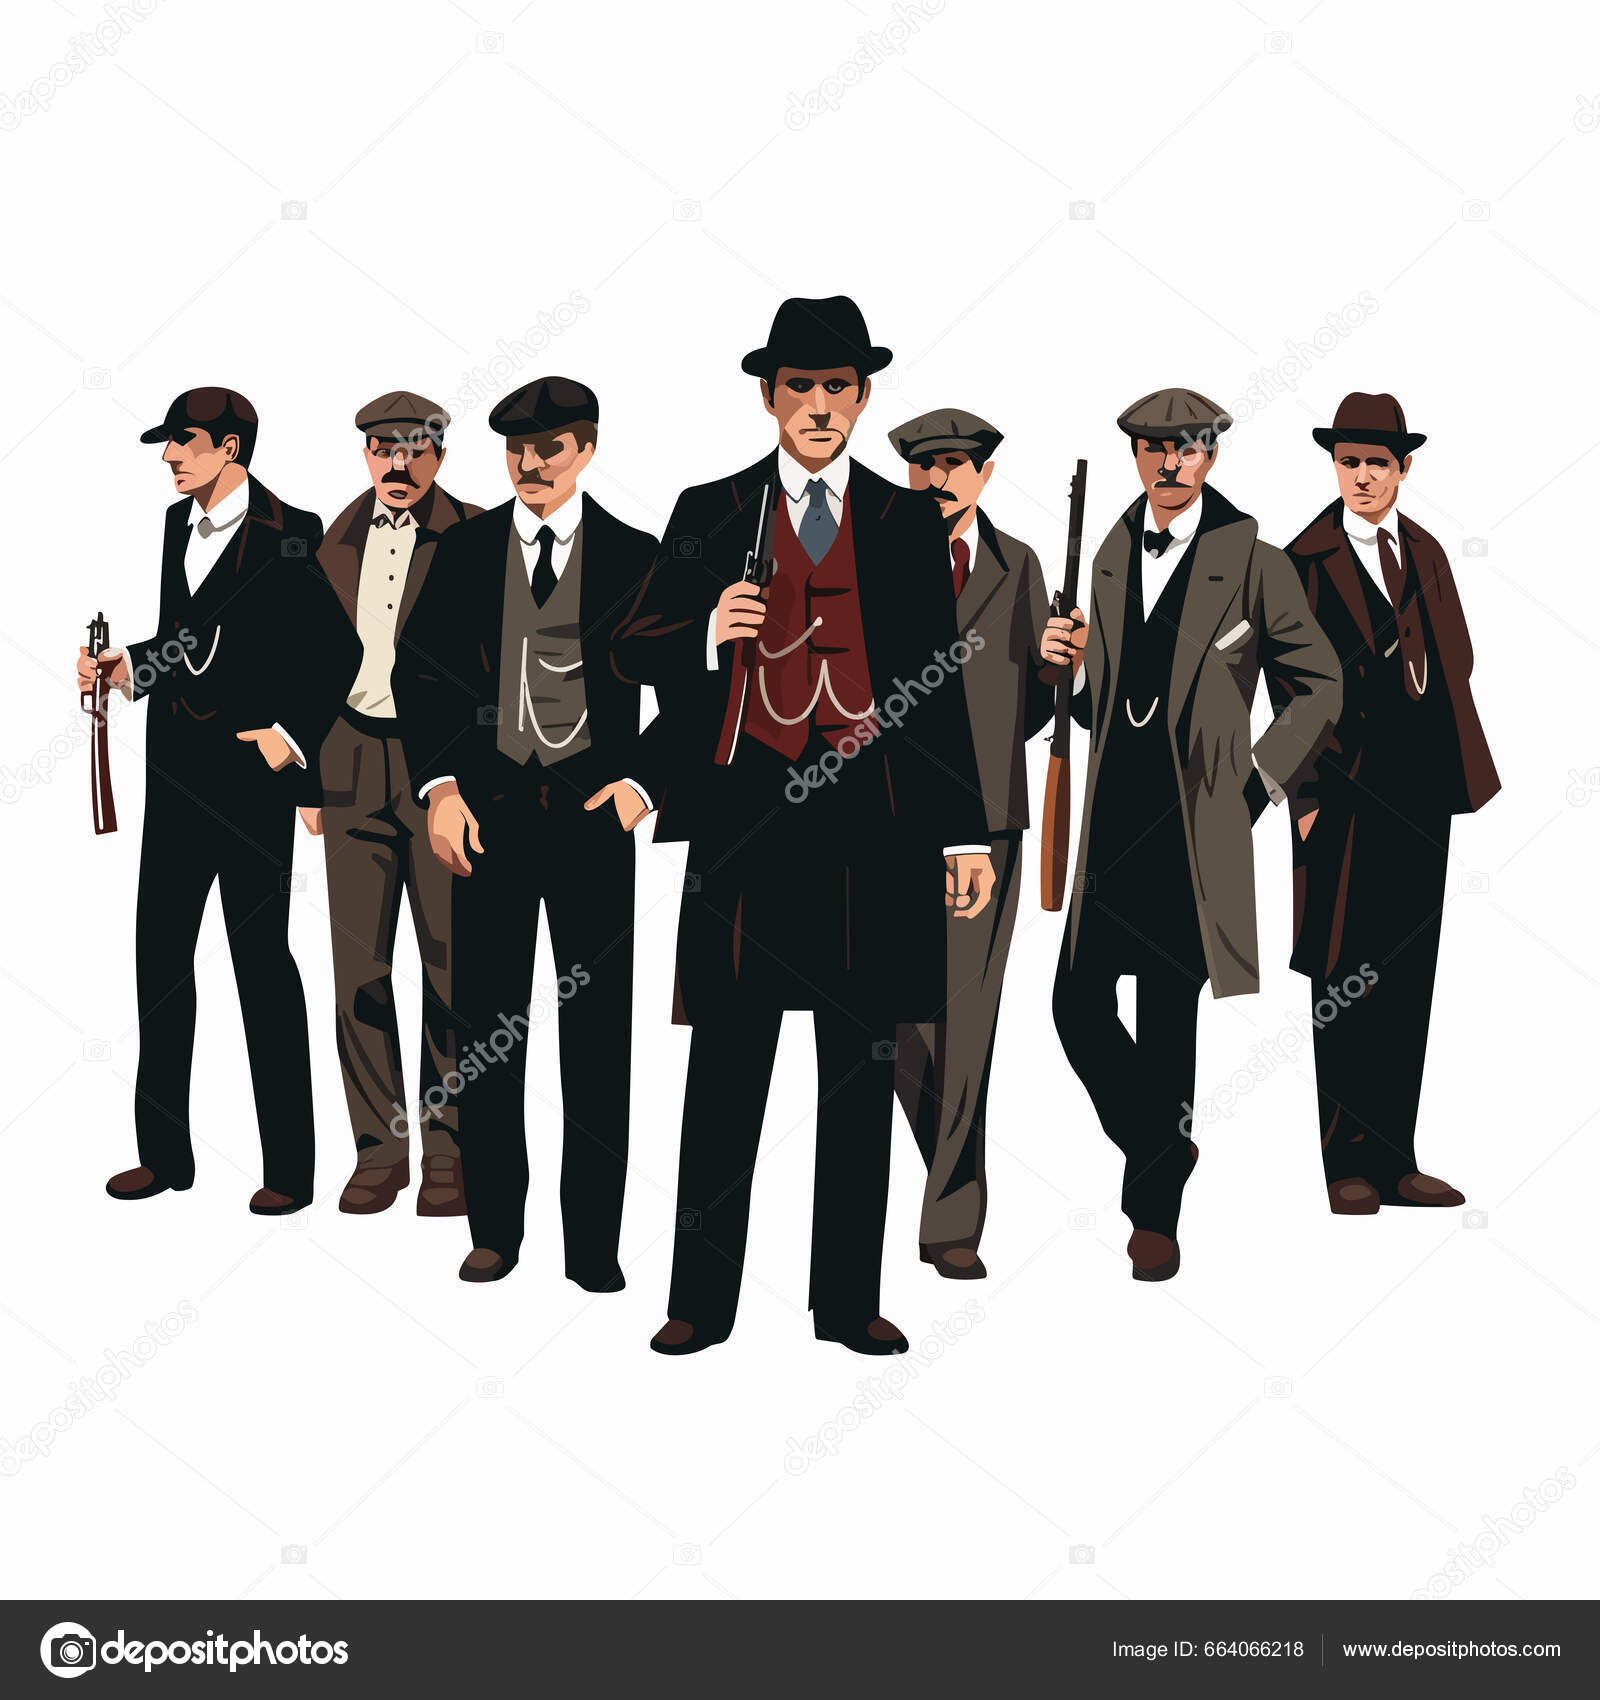 https://st5.depositphotos.com/23404642/66406/v/1600/depositphotos_664066218-stock-illustration-gangster-style-group-men-group.jpg